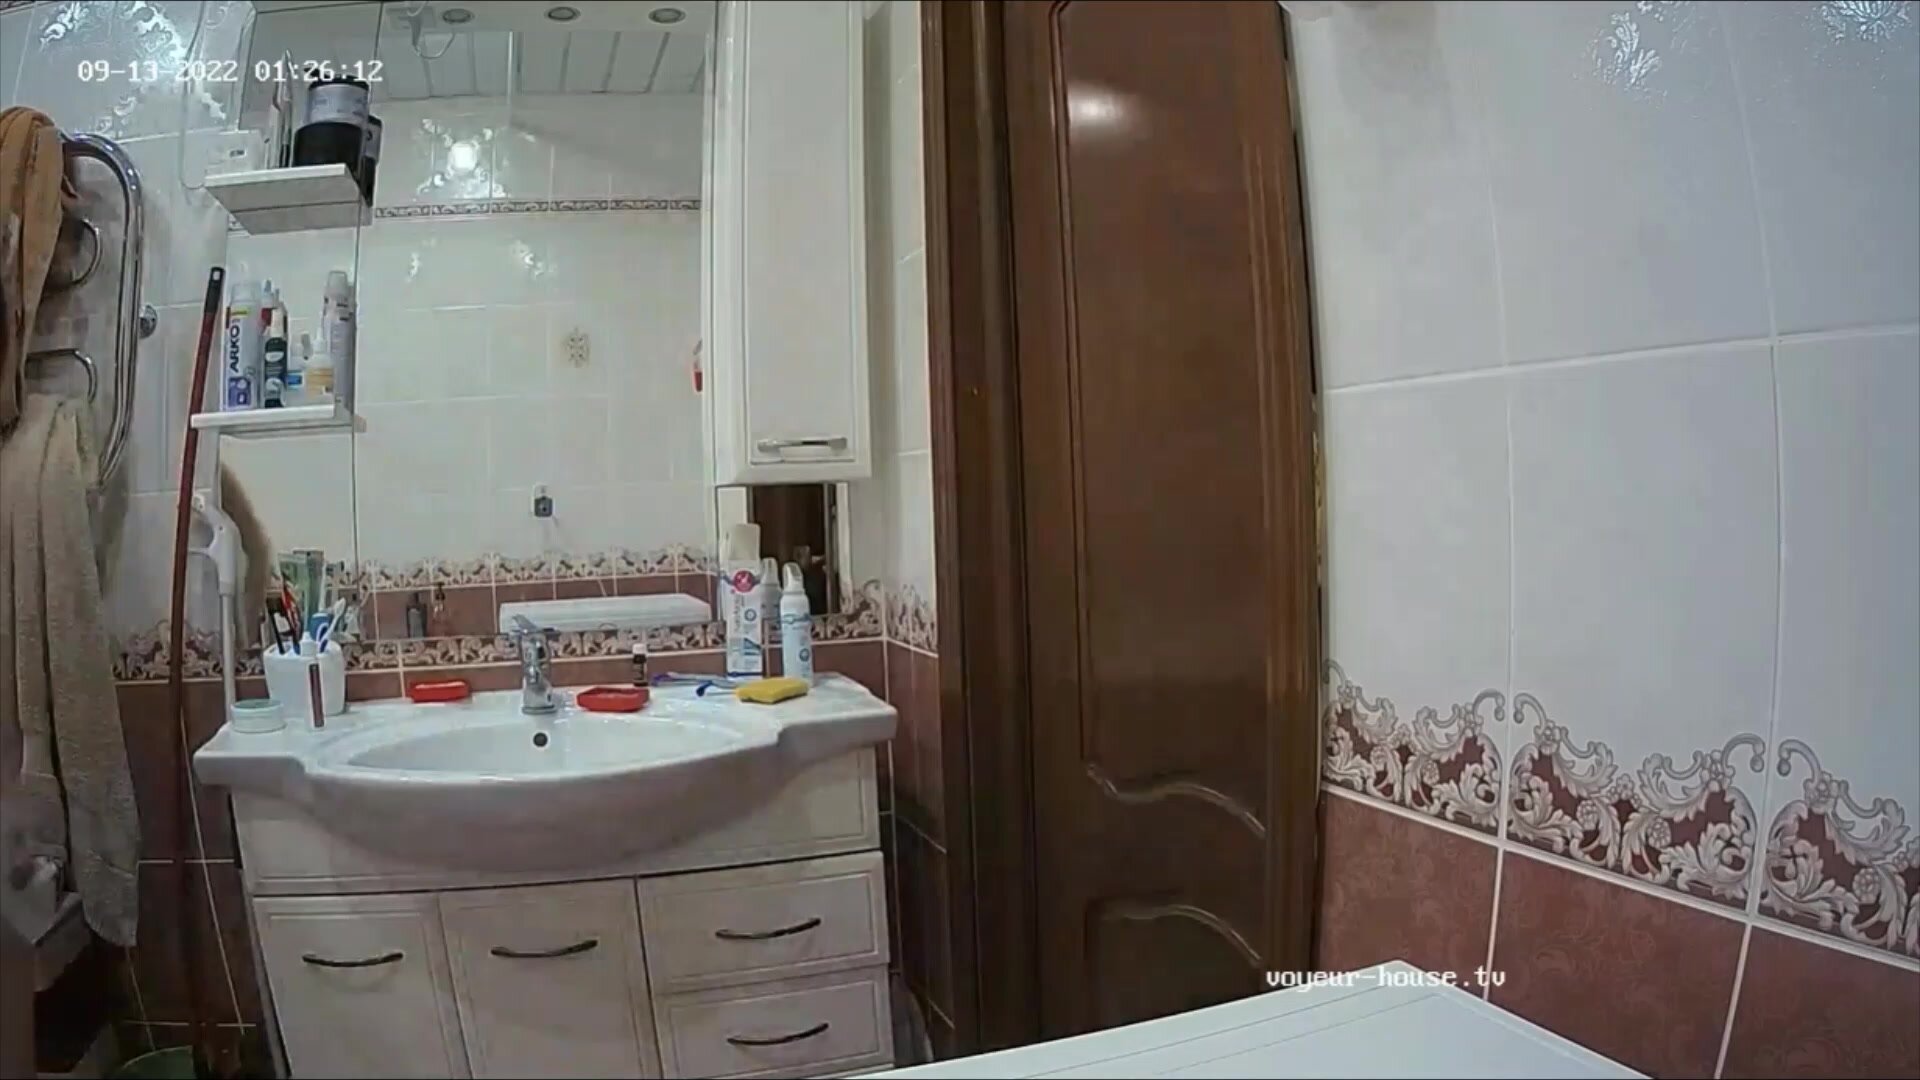 Woman  in Toilet 440